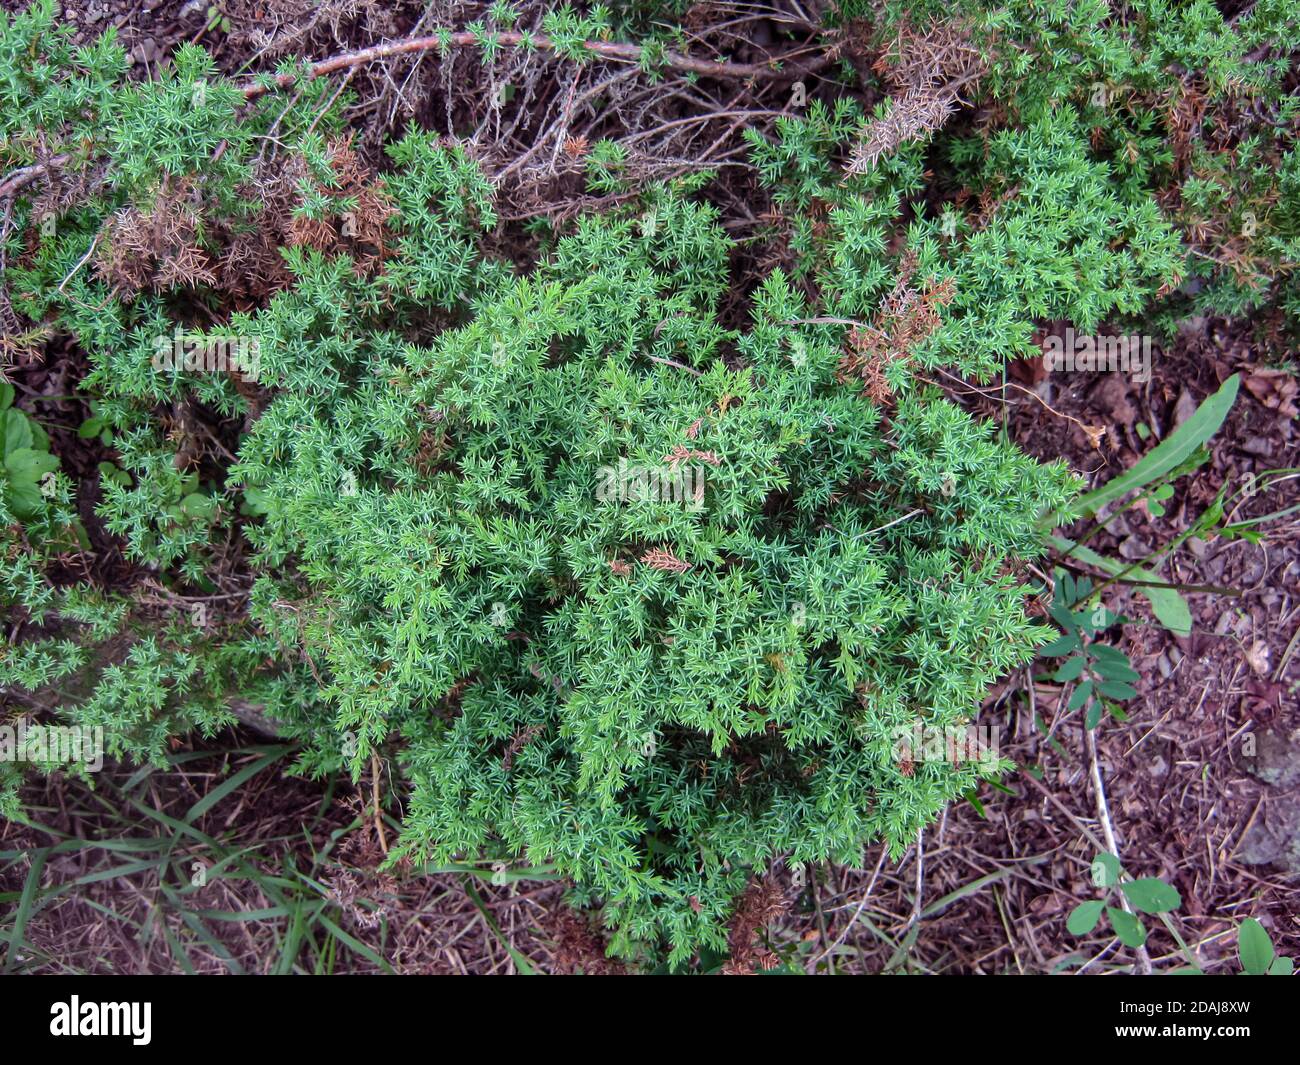 Nahaufnahme grüner Dornbusch, Pflanze mit Dornen Stockfotografie - Alamy